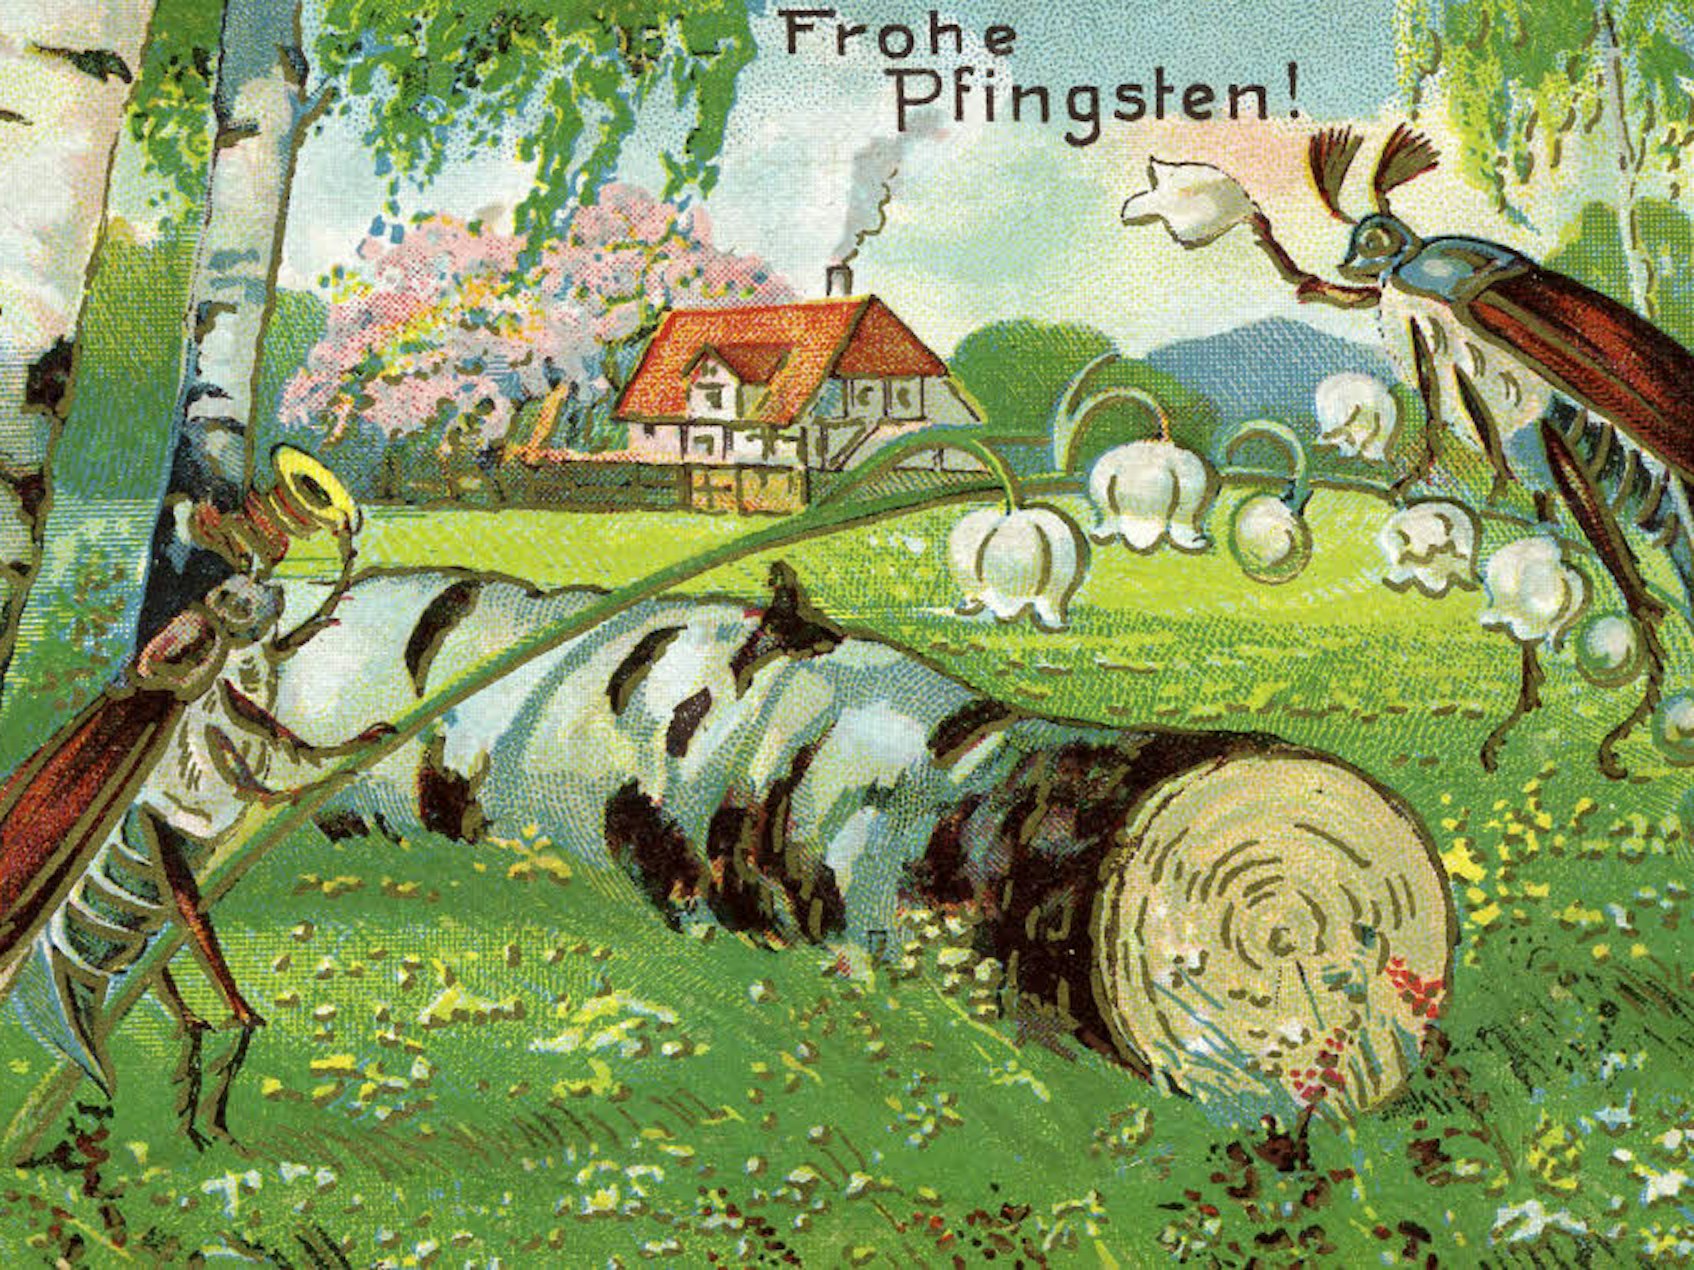 Diese 1910 gelaufene Grußkarte zu Pfingsten zeigt ein fröhliches Käfermotiv, das eine „Holzfahrt“ in die Natur andeutet.